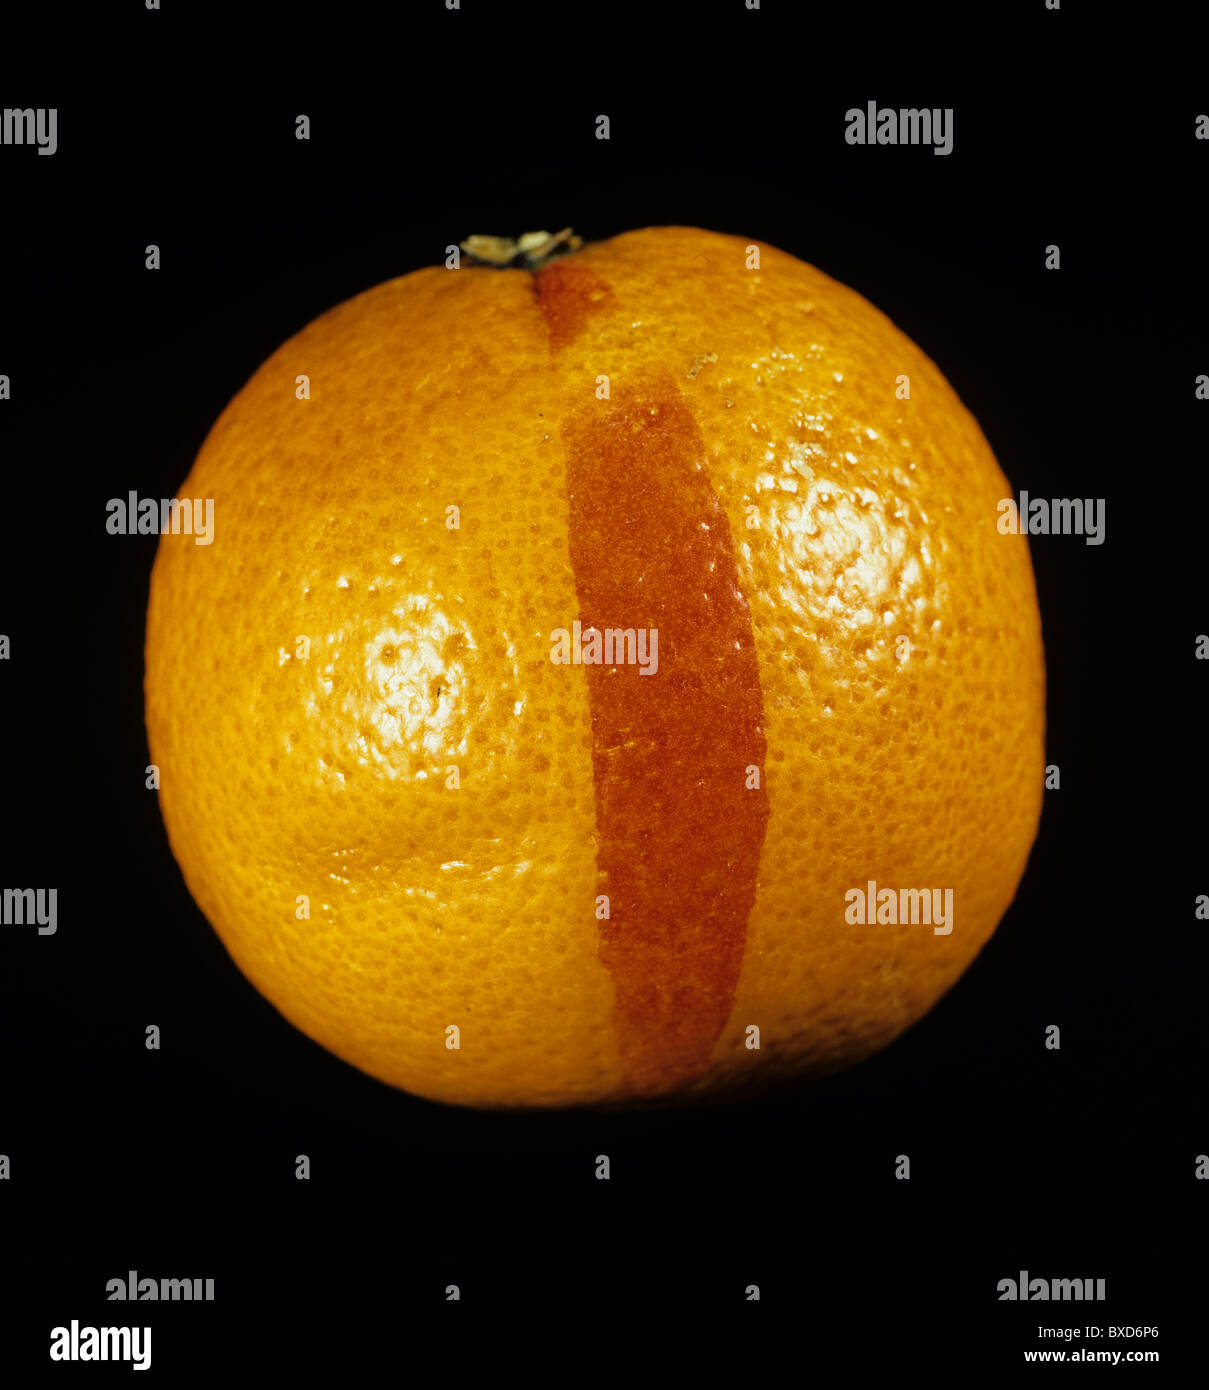 D'une chimère, une malformation génétique produisant une marque rouge sur la peau d'une orange Banque D'Images